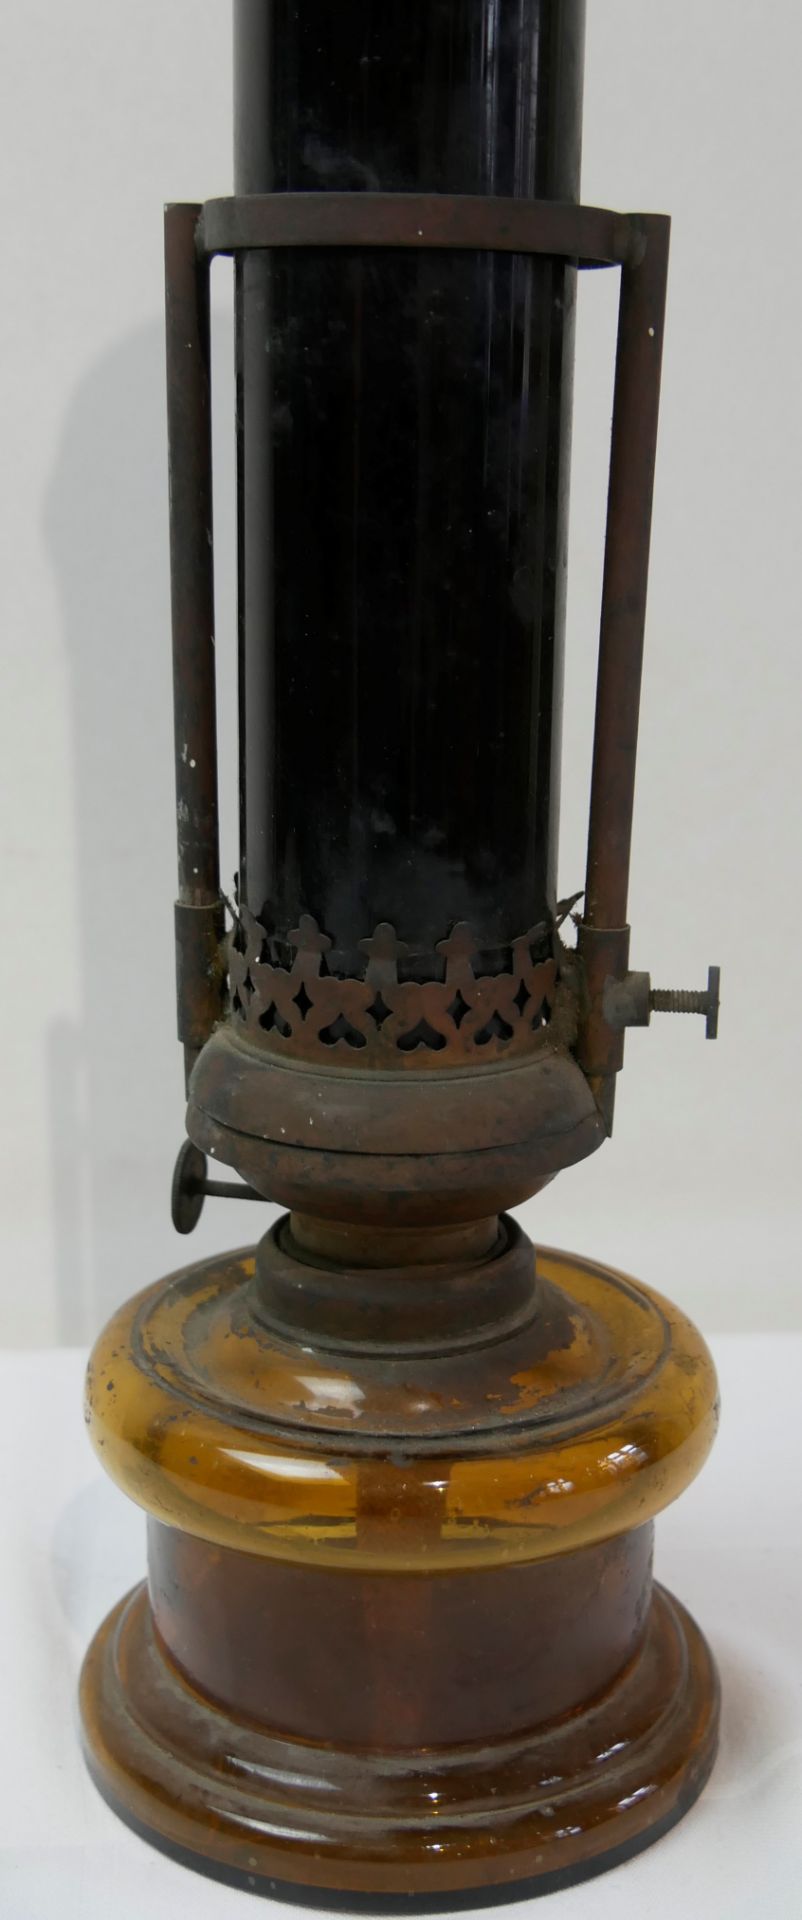 alte Petroleum Stehlampe mit dunklem Glasschirm, Zylinderaufsatz, Ölgefäß aus braunem Glas. - Image 2 of 2